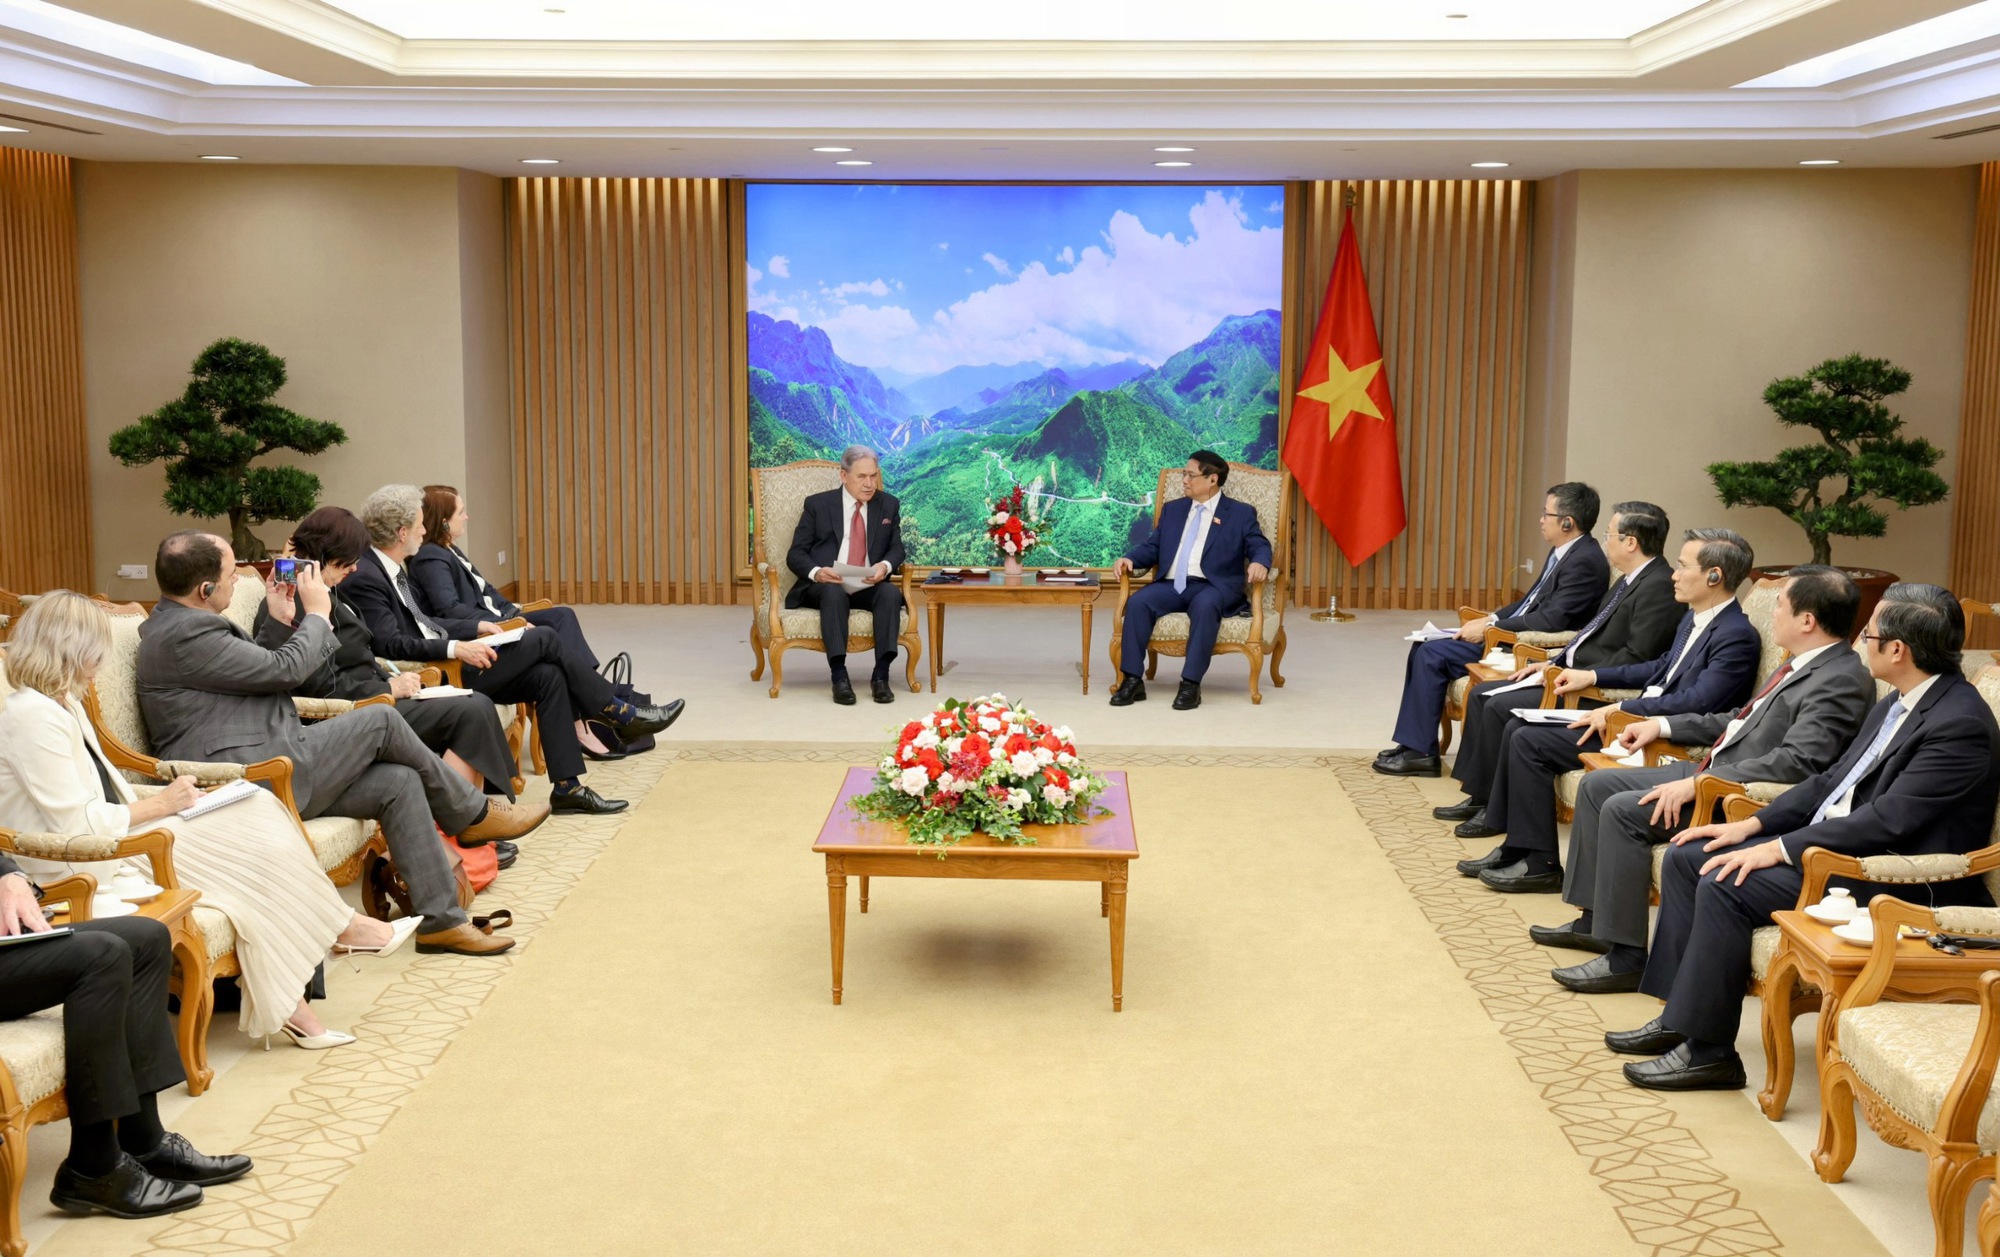 Phó Thủ tướng, Bộ trưởng Ngoại giao Winston Peters khẳng định New Zealand coi trọng vai trò của Việt Nam ở khu vực và quan hệ Đối tác Chiến lược Việt Nam-New Zealand